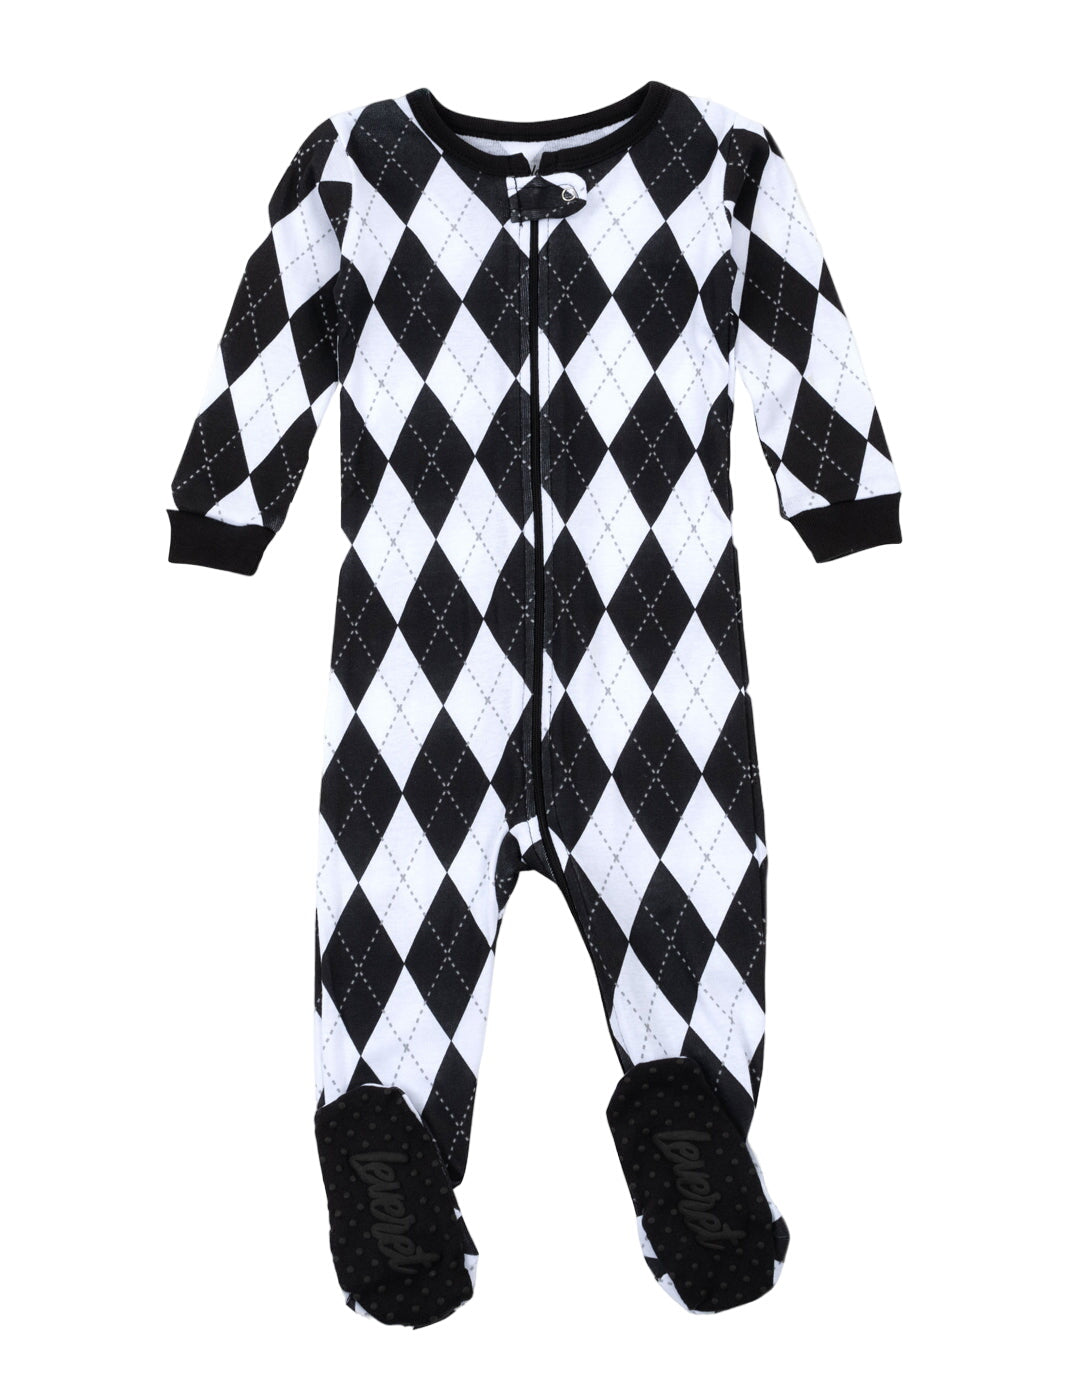 Kids Footed Black & White Argyle Pajamas